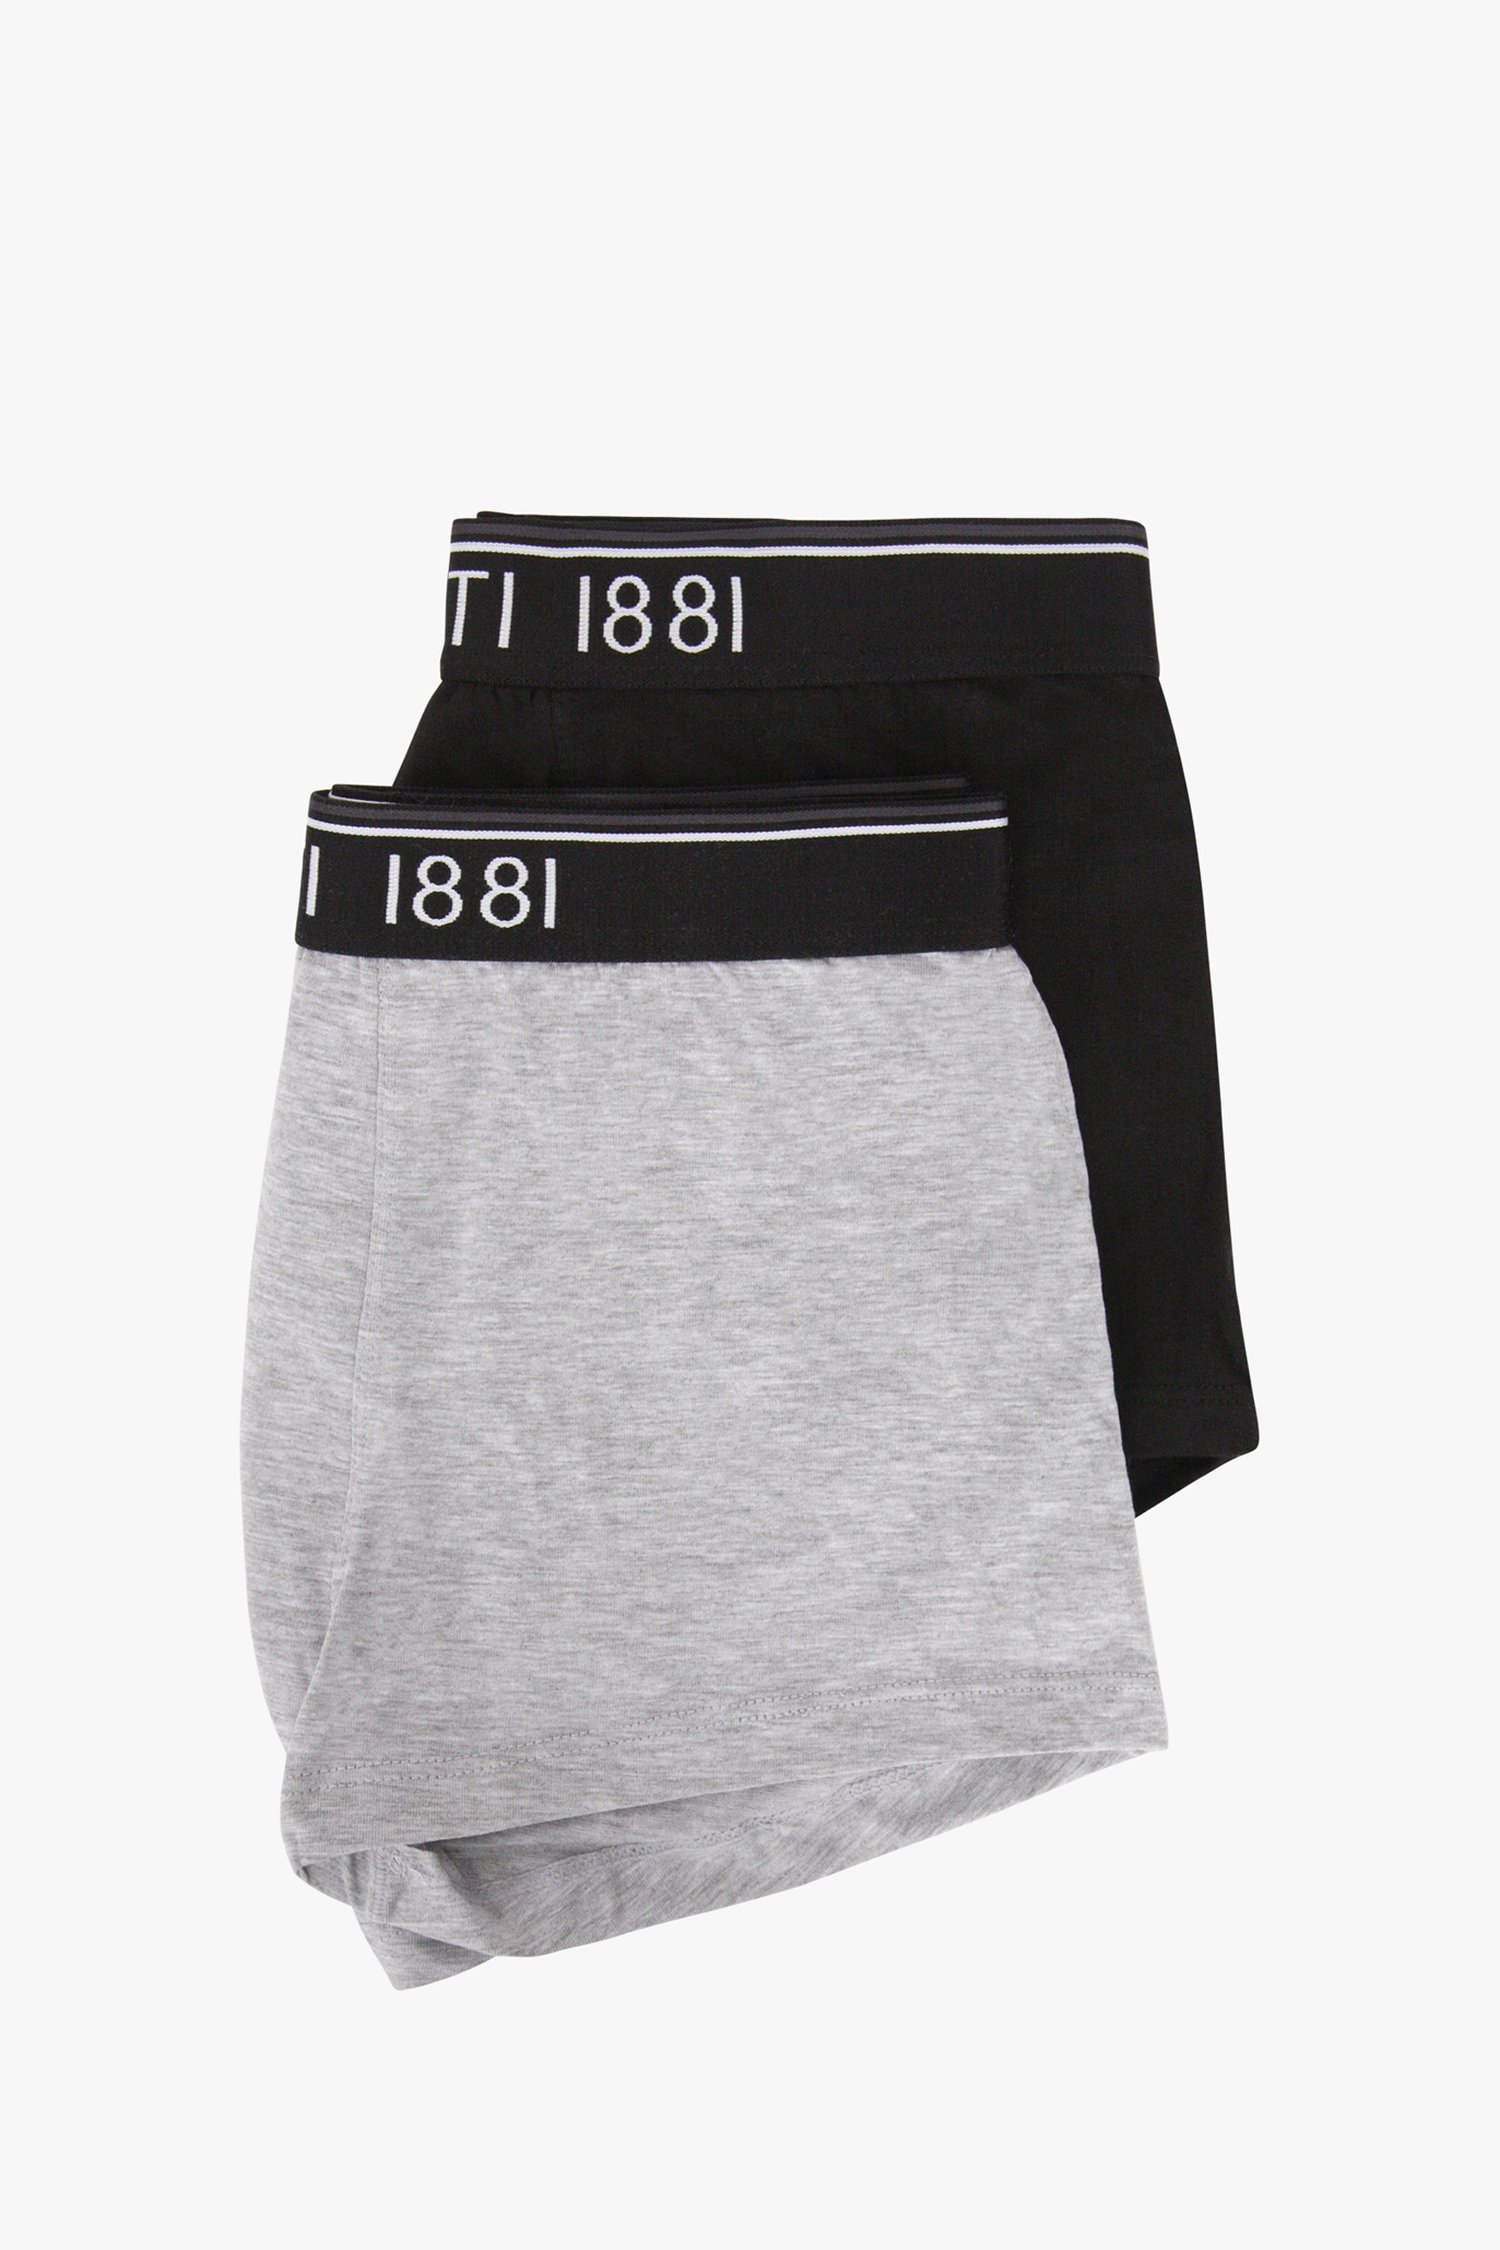 Lot de 2 boxers pour homme - gris et noir de Cerruti 1881 pour Hommes